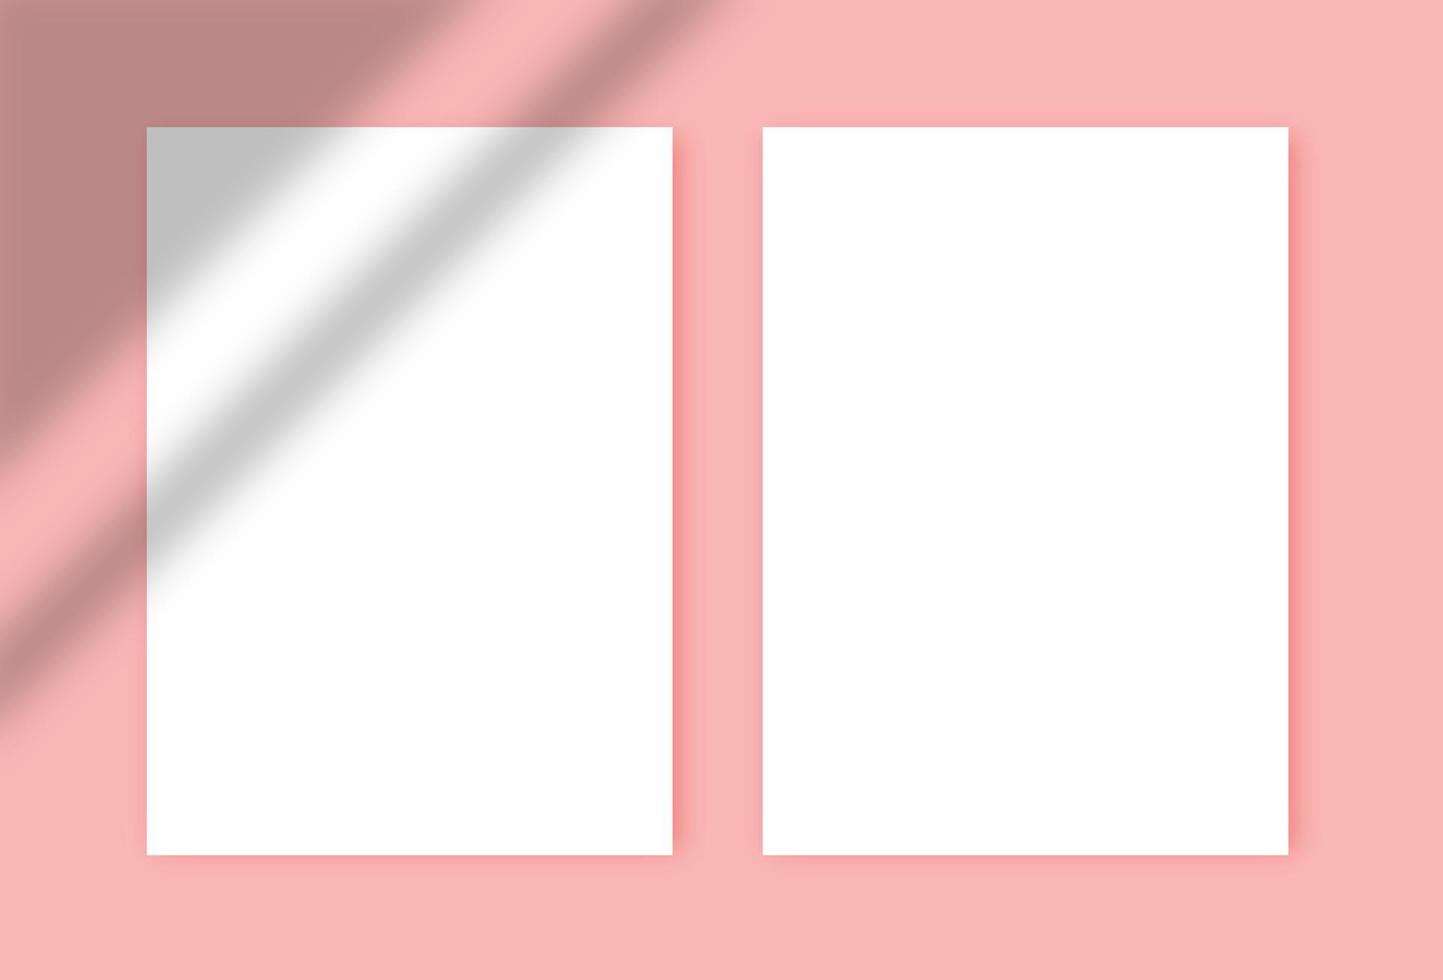 dois papéis a4 em branco brancos com sombras no fundo rosa. modelos para apresentação de projeto, como folheto, capa, cartaz. modelo de design mock up vetor